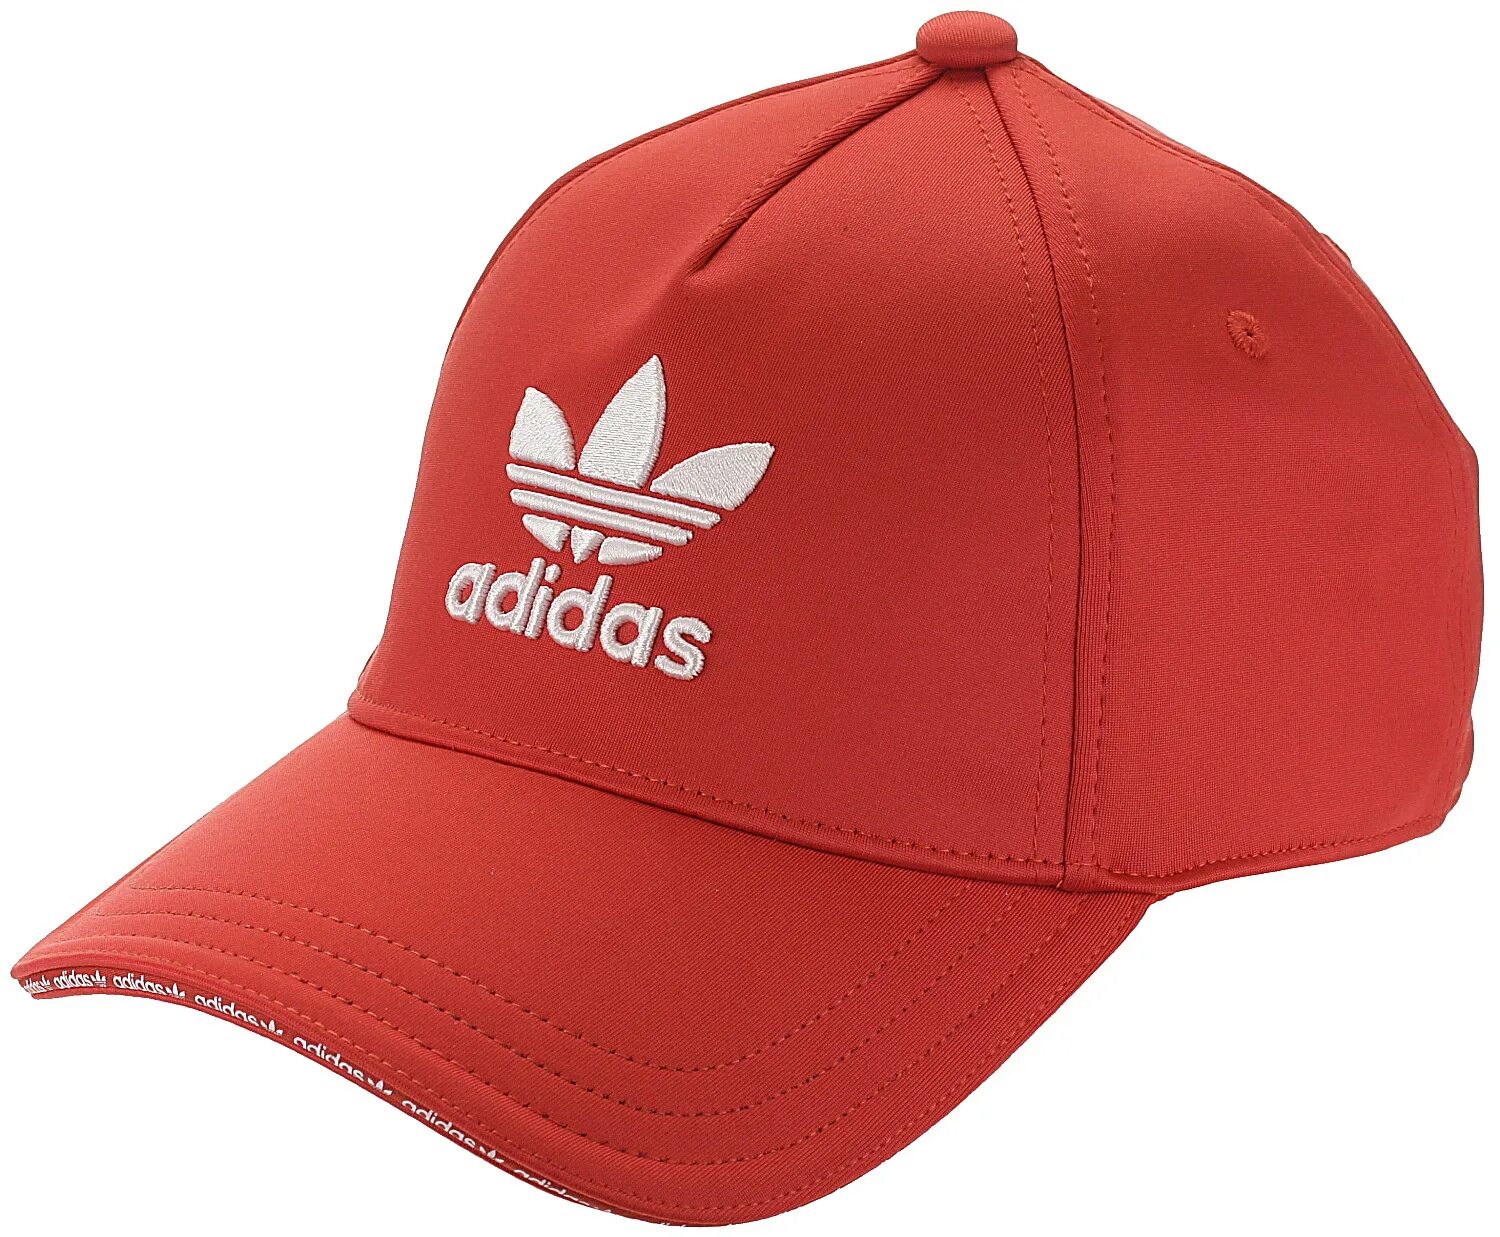 Кепка adidas Originals красная. Кепка adidas Spain Home hat - Red fj0810. Кепка адидас ориджинал.